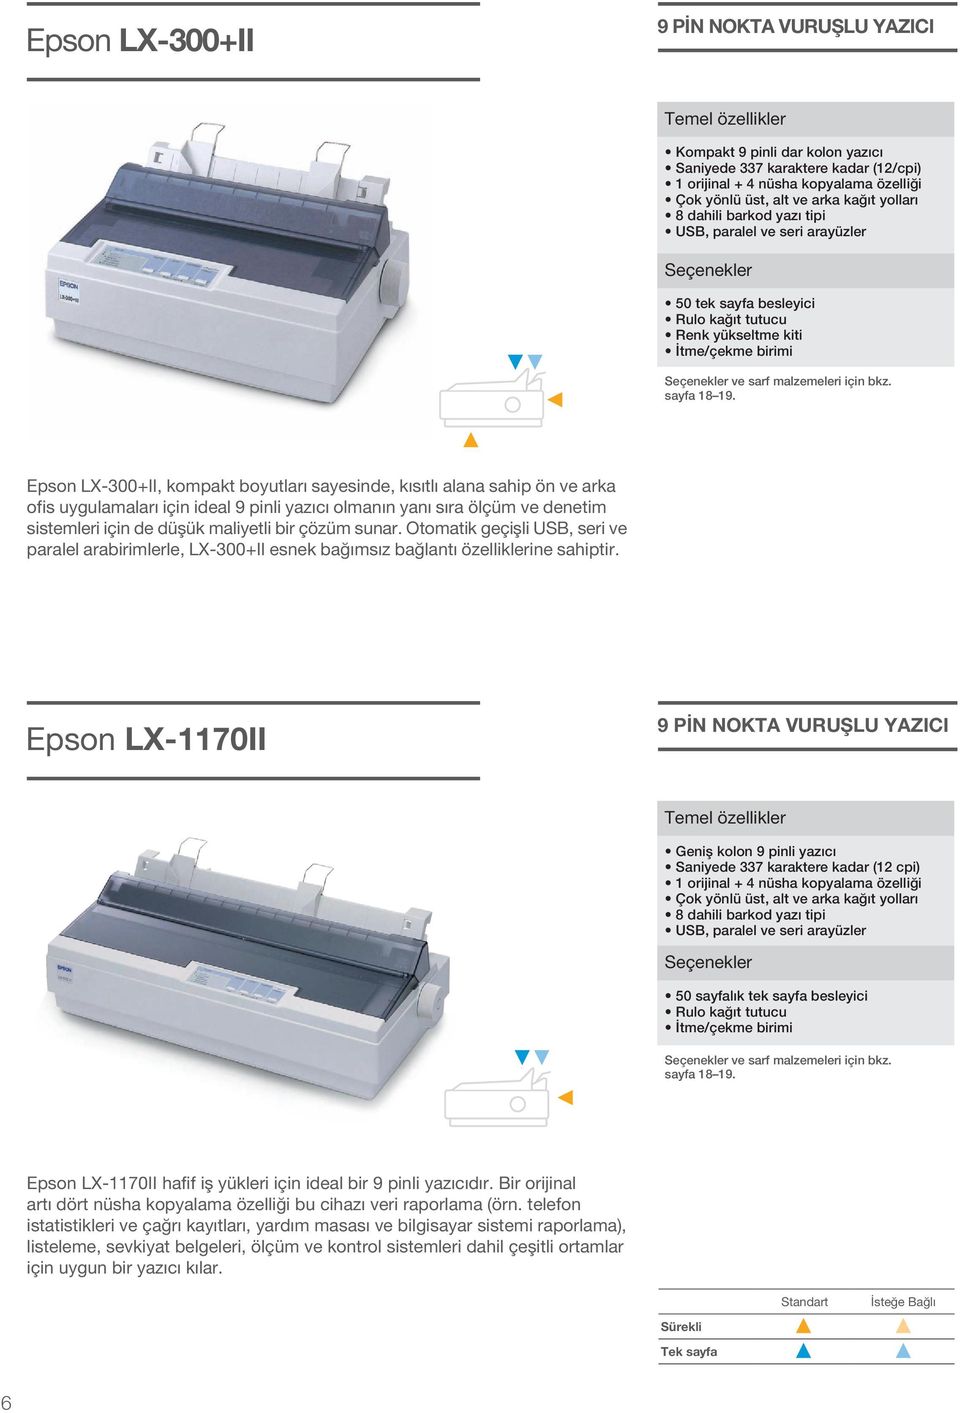 Epso LX-300+II, kompakt boyutarı sayeside, kısıtı aaa sahip ö ve arka ofis uyguamaarı içi idea 9 pii yazıcı omaı yaı sıra öçüm ve deetim sistemeri içi de düşük maiyeti bir çözüm suar.